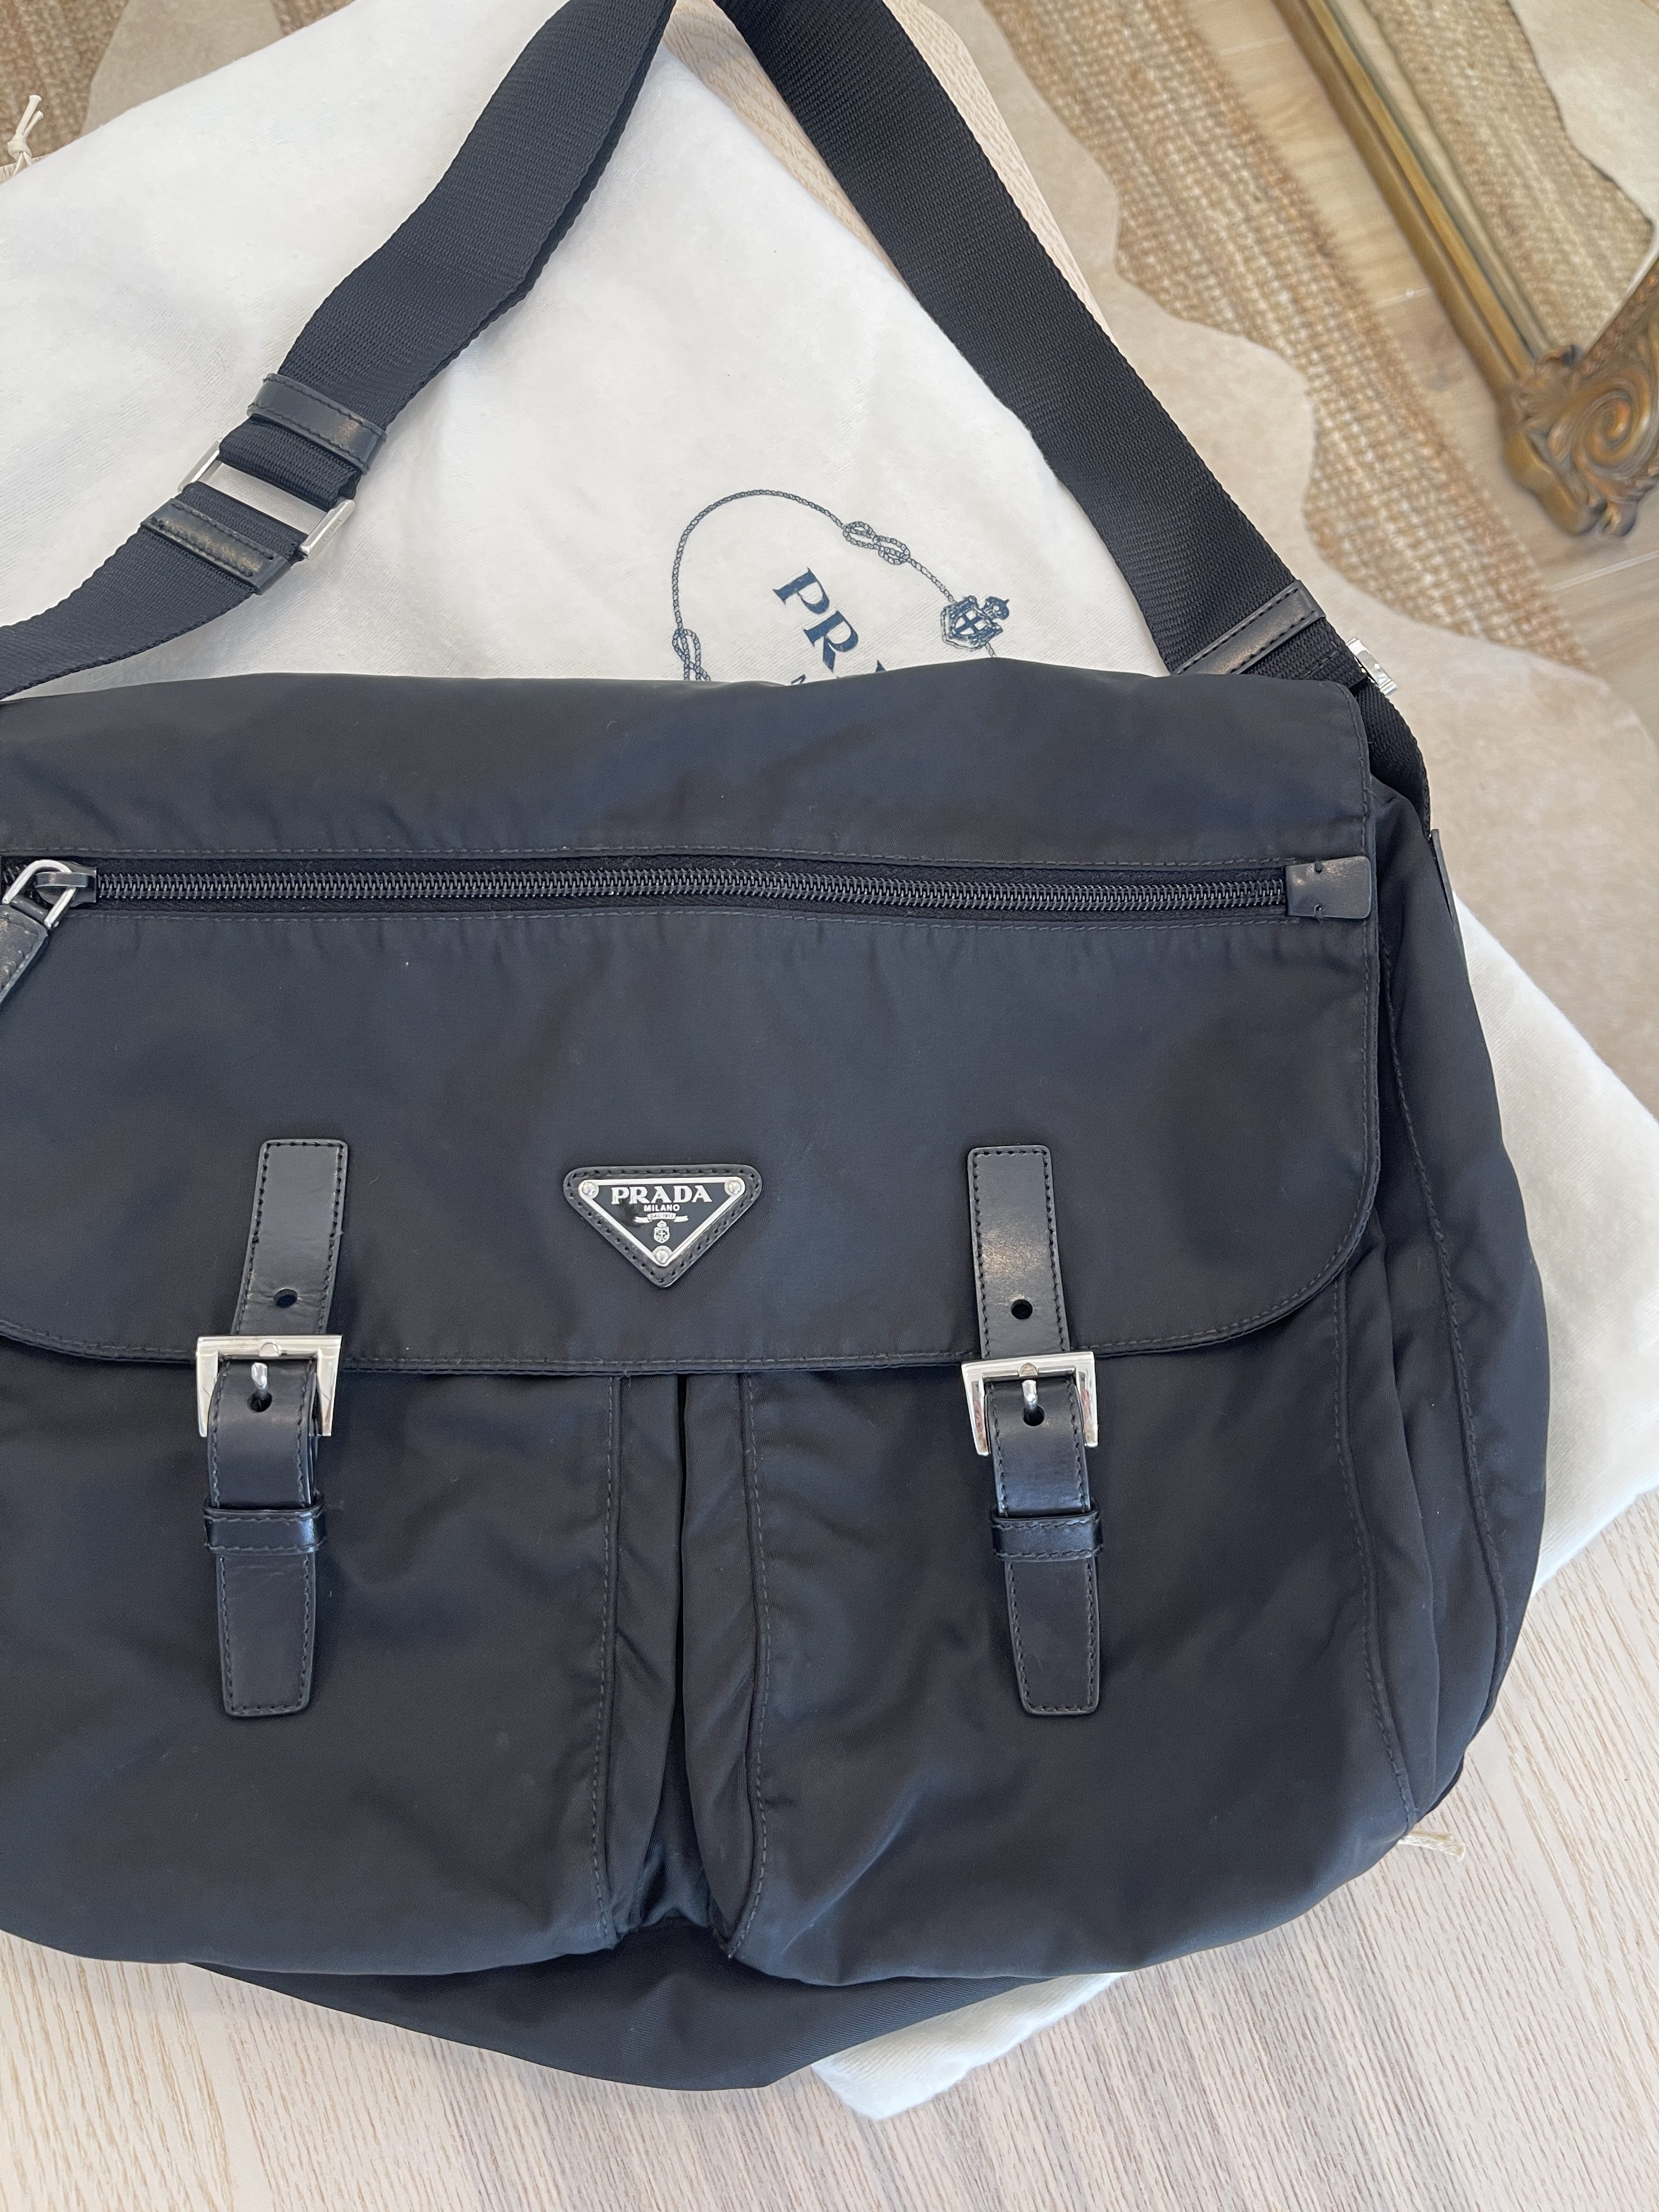 Prada Vela Nylon Messenger Bag BT6671 Black (Nero) – BRANDS N BAGS